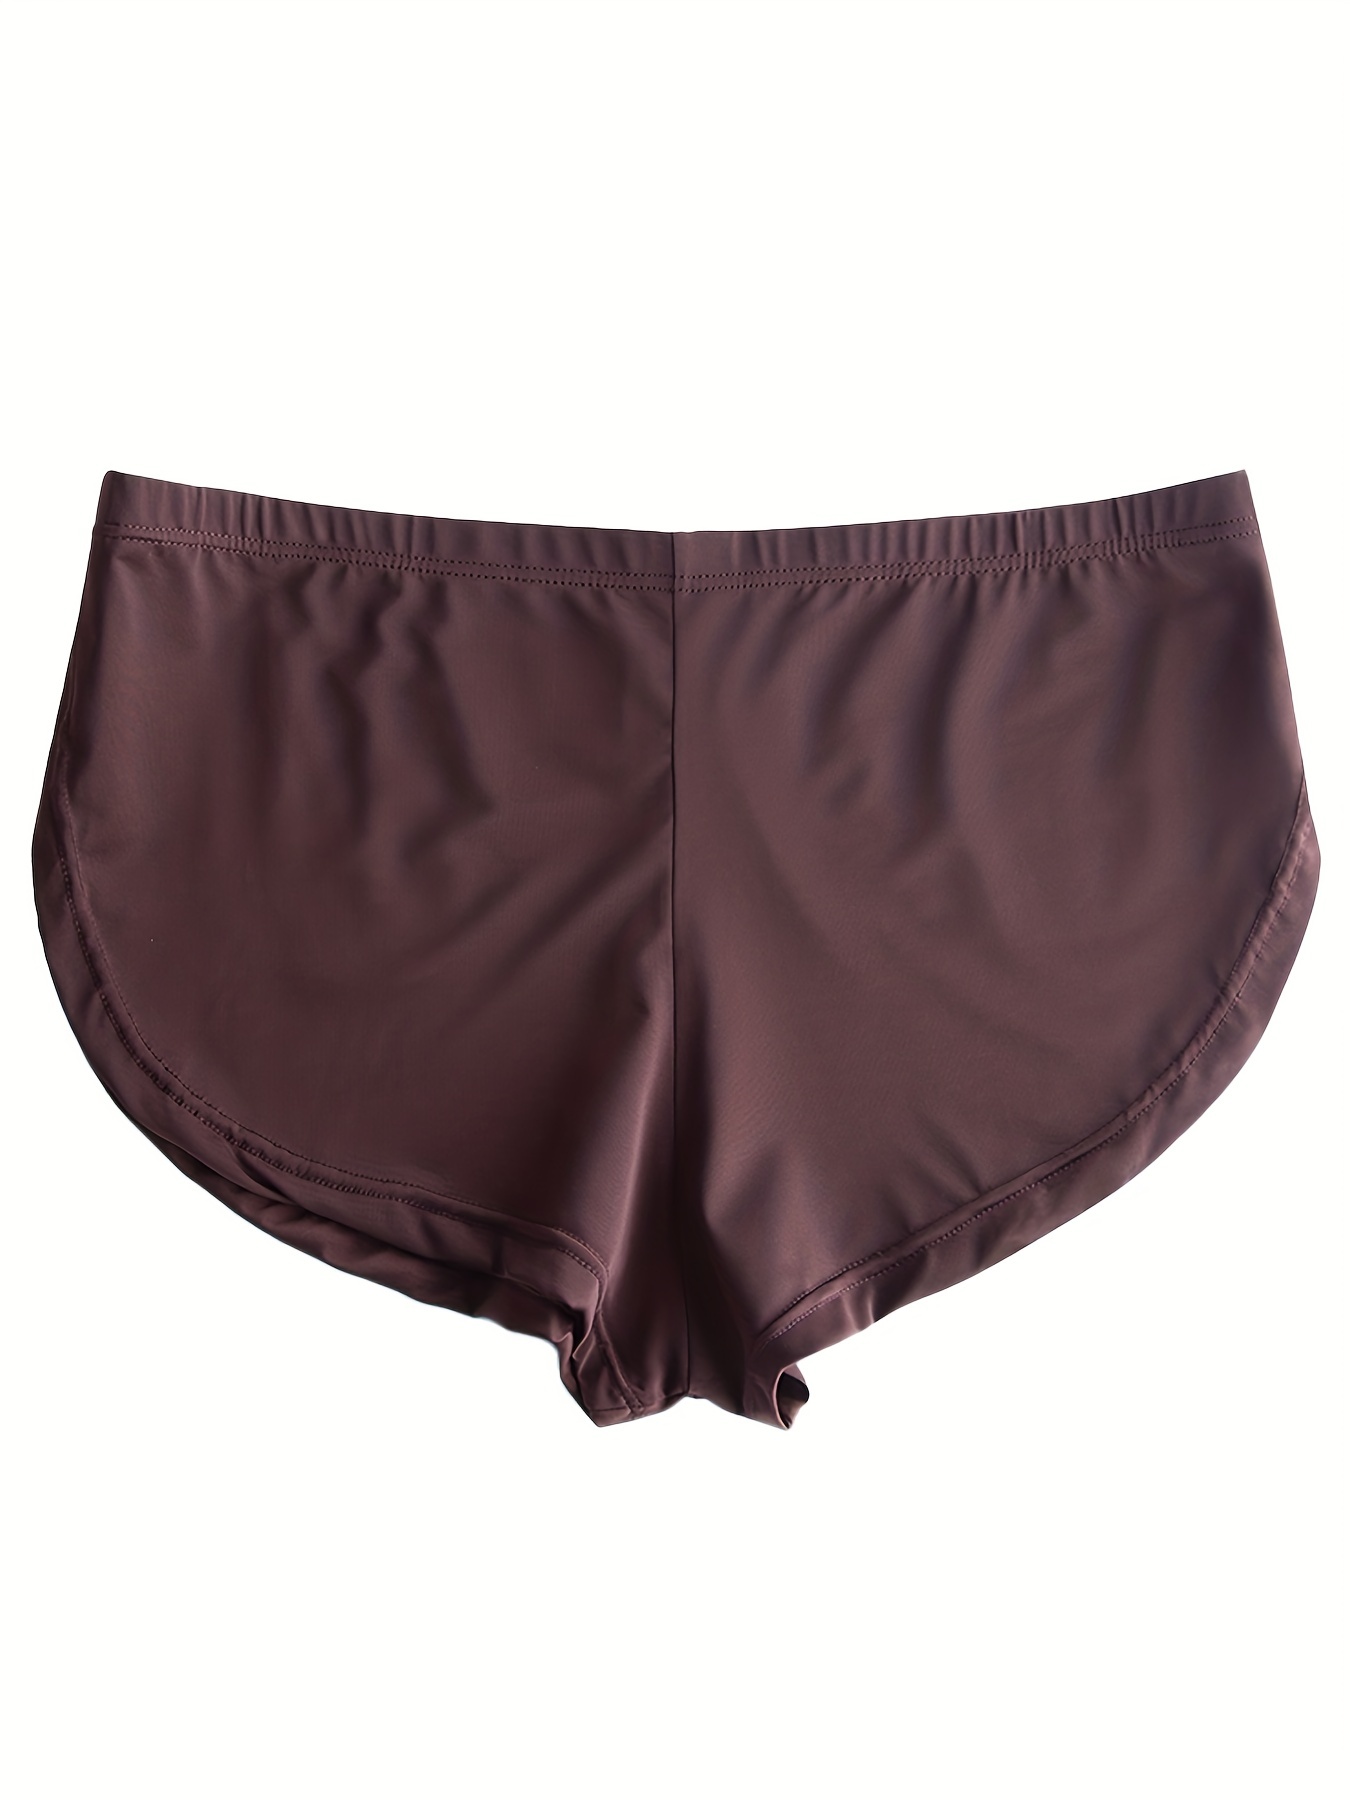 Men's Underwear Bulge Pouch Boxers Breifs Underwear Comfortable